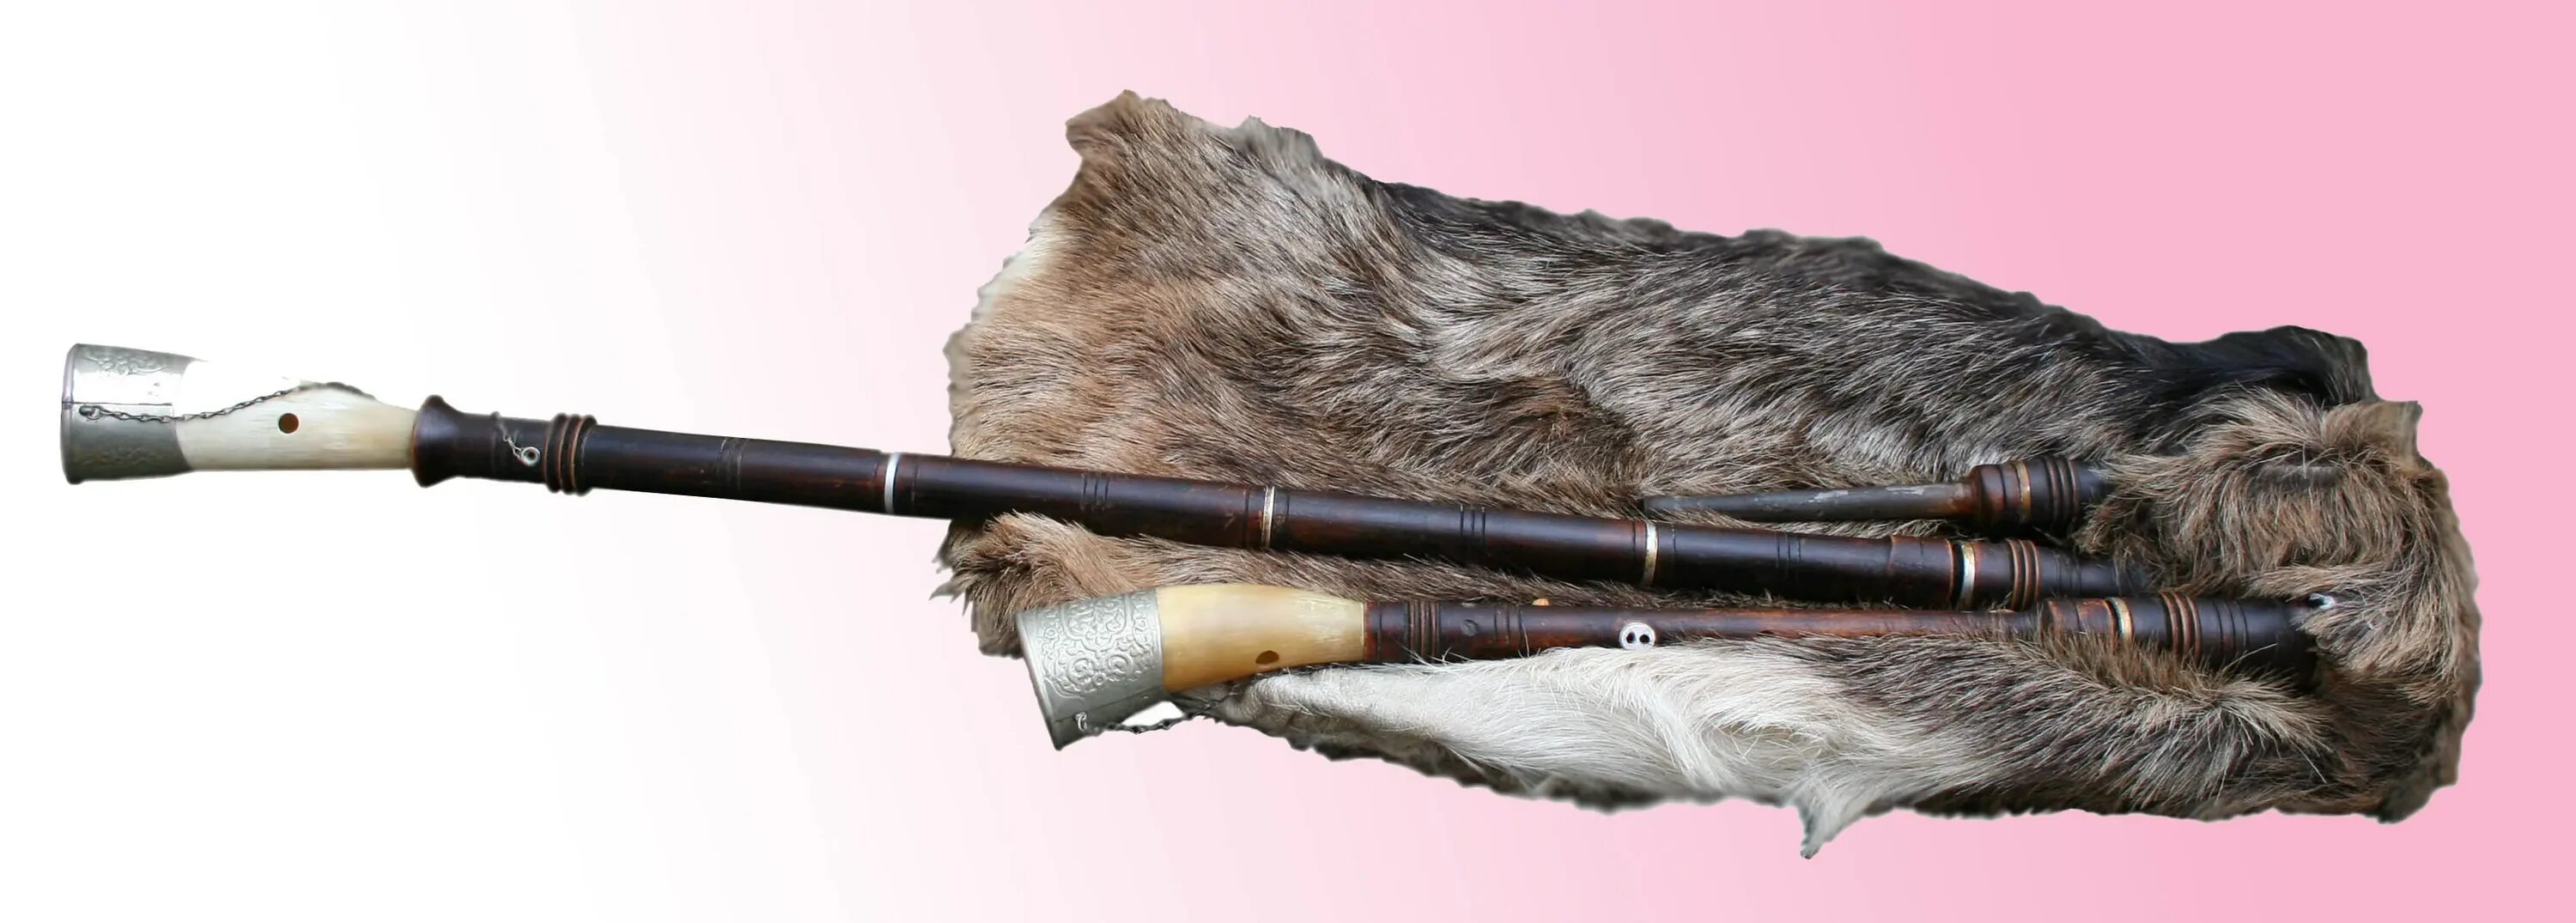 Украинская волынка. Волынка с мехами. Польская волынка коза. Тулуп зурна музыкальный инструмент.